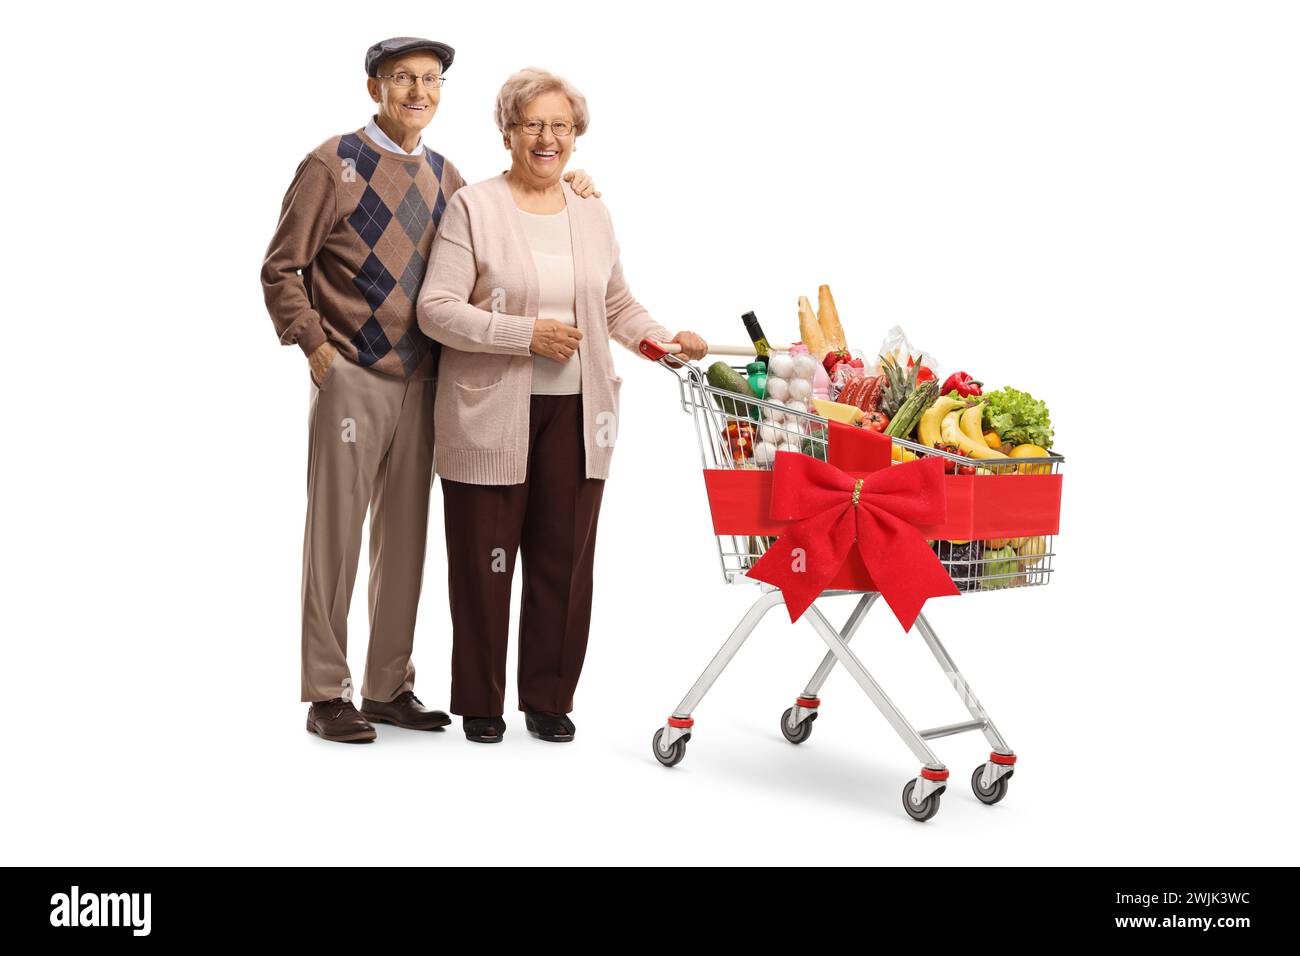 Porträt eines älteren Paares in voller Länge, das mit einem Einkaufswagen posiert, der mit einem roten Band gebunden ist, isoliert auf weißem Hintergrund Stockfoto